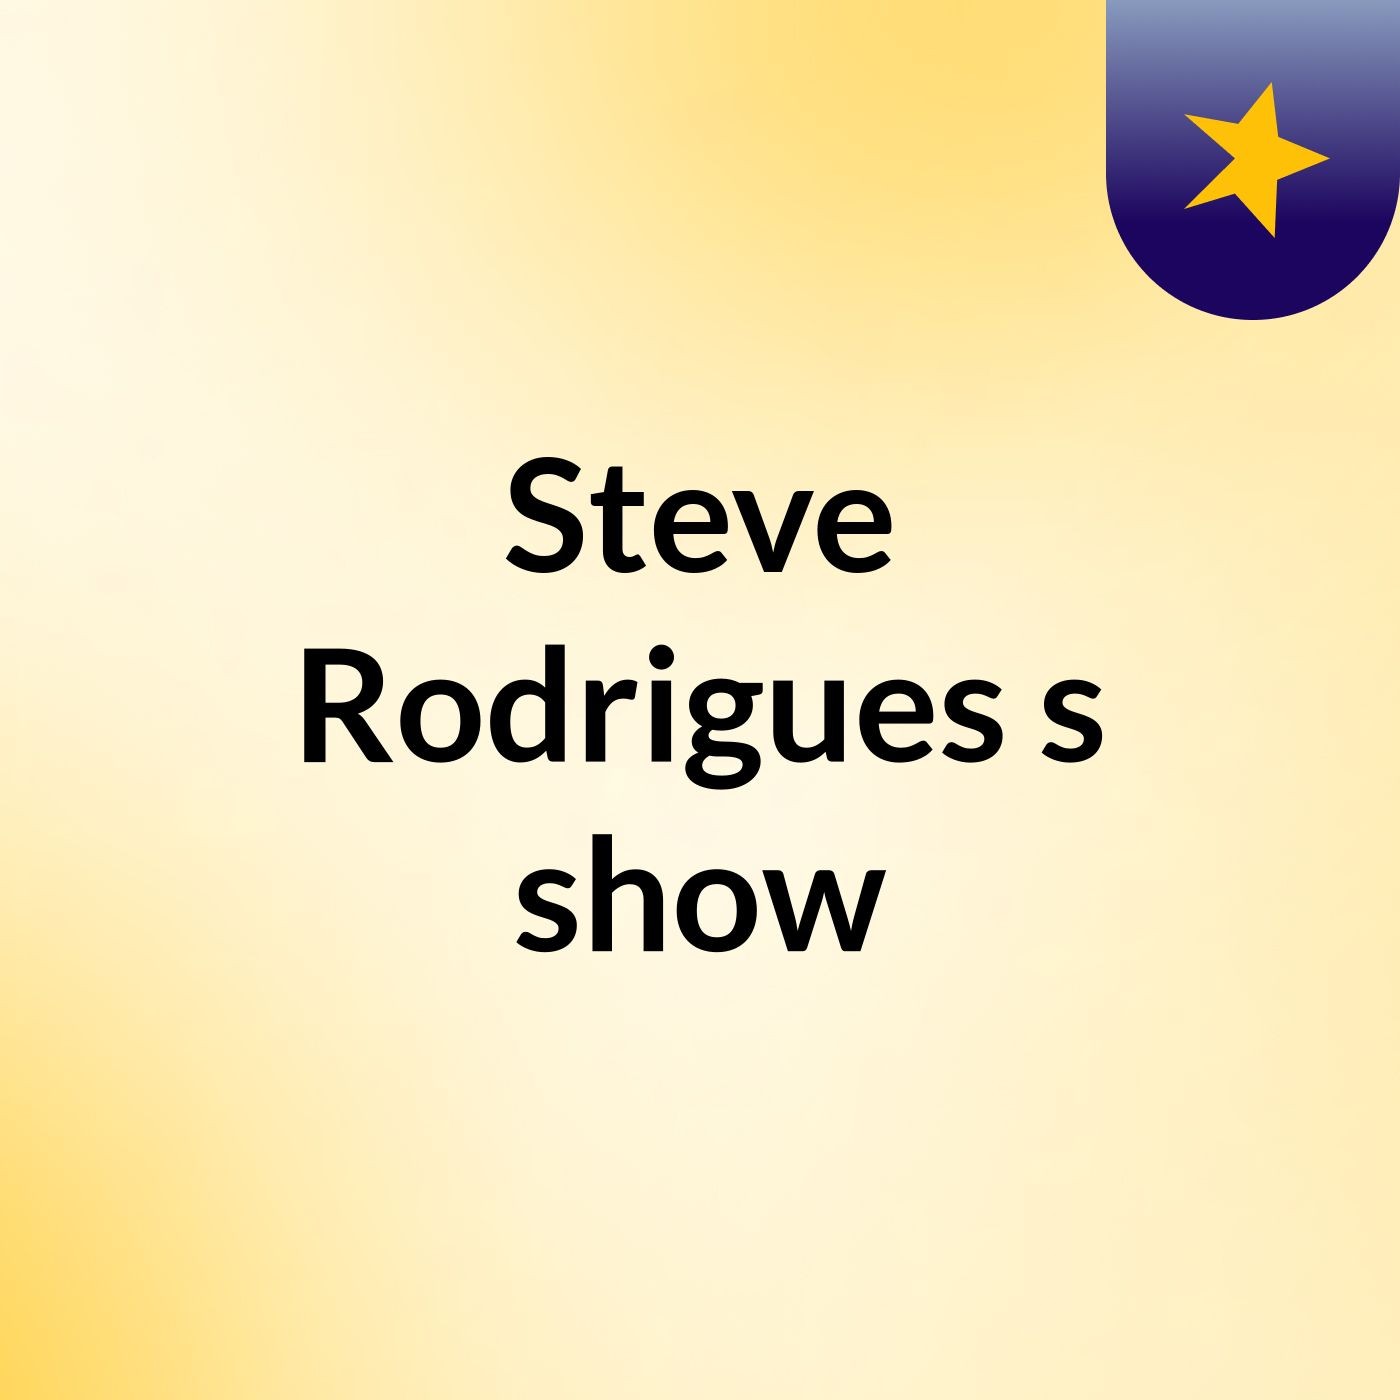 Steve Rodrigues's show